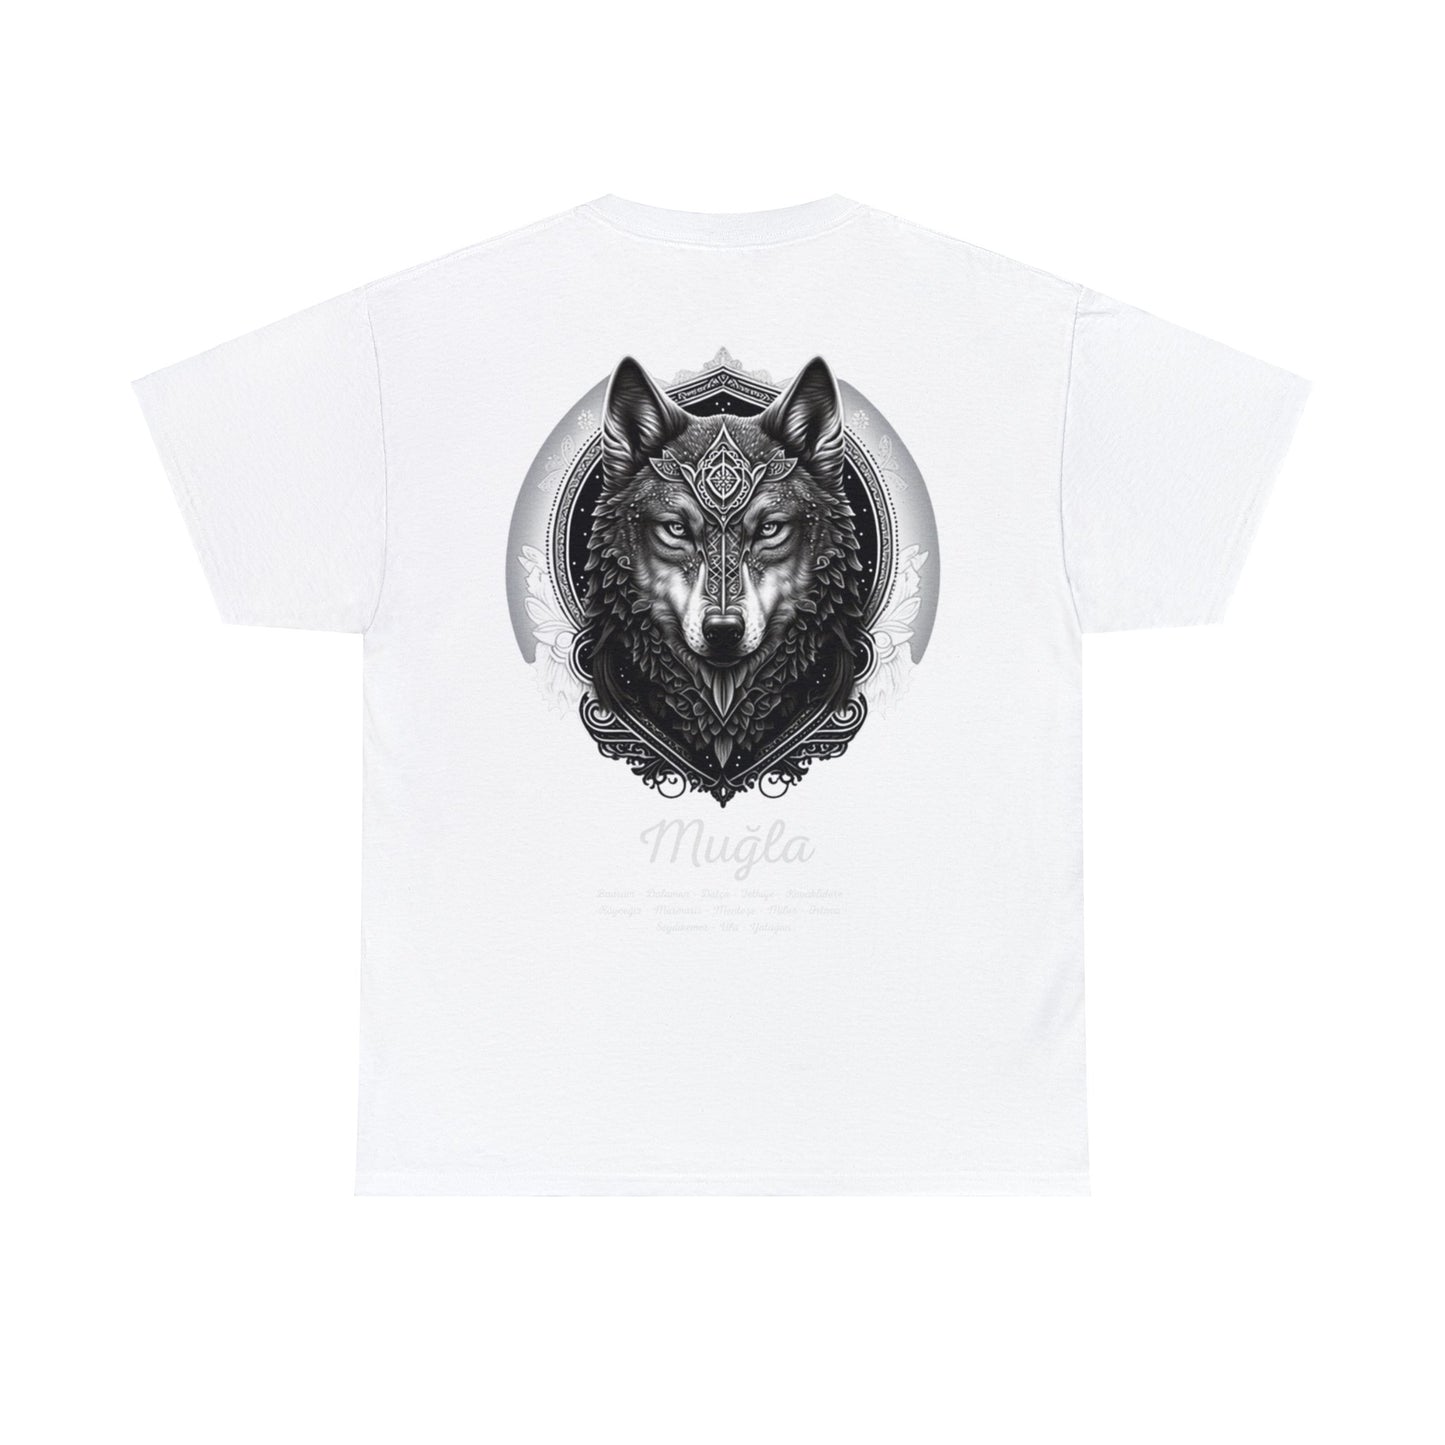 Kurt - 48 Muğla - T-Shirt - Back Print - Black/White